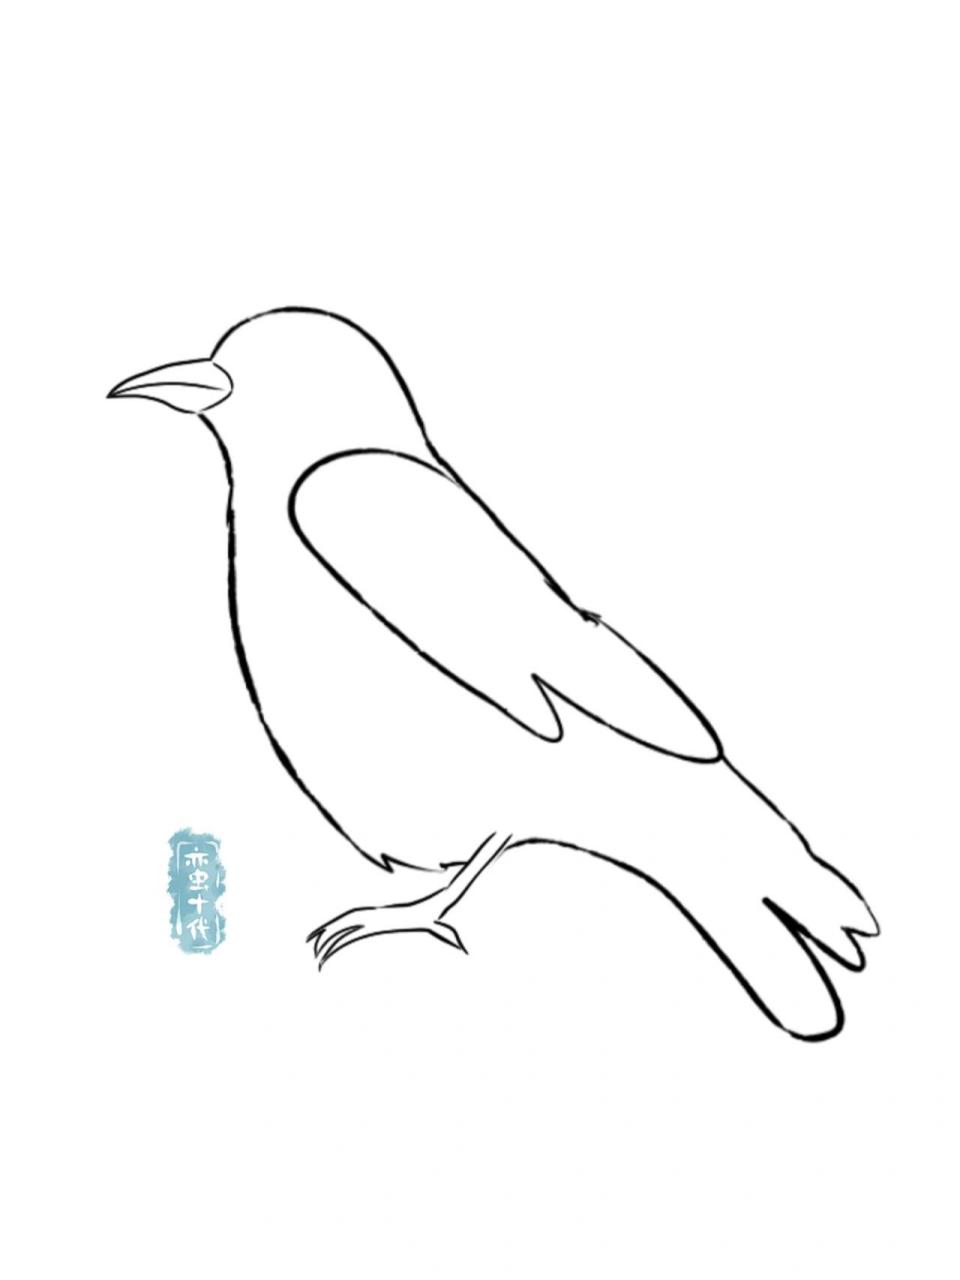 乌鸦怎么画 简单图片